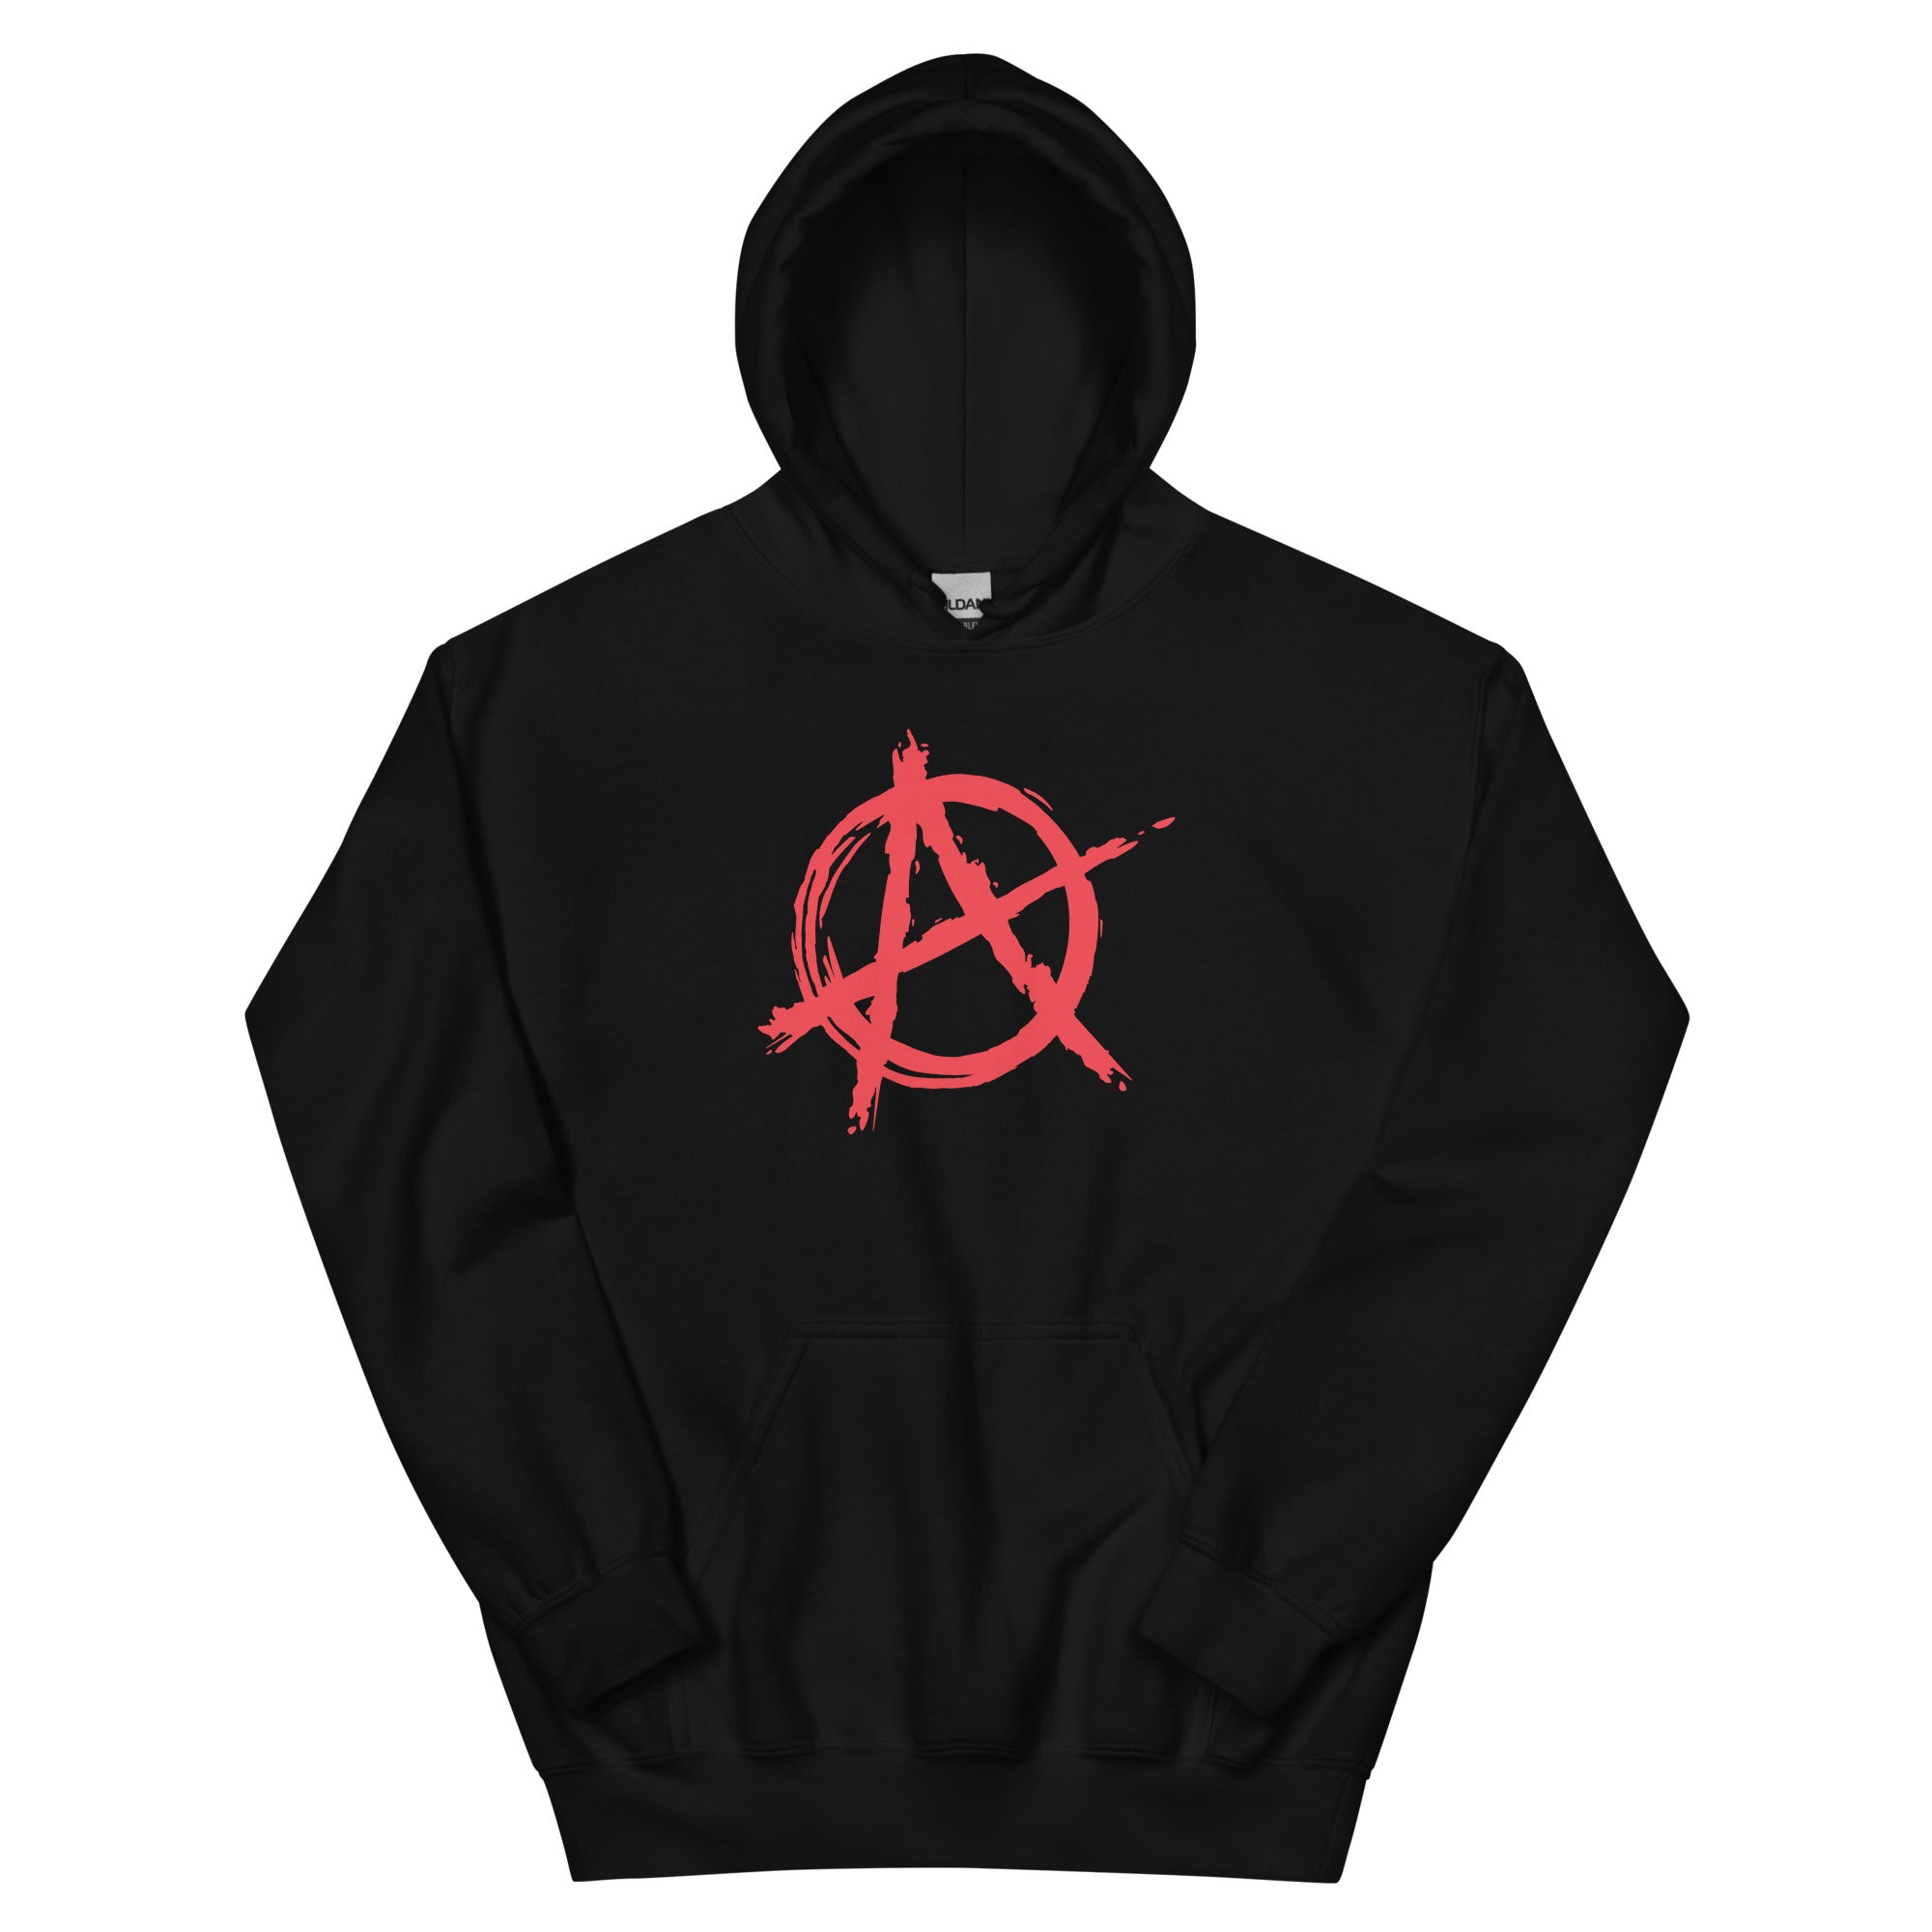 Red Anarchy is Order Symbol Punk Rock Unisex Hoodie Sweatshirt - Edge of Life Designs